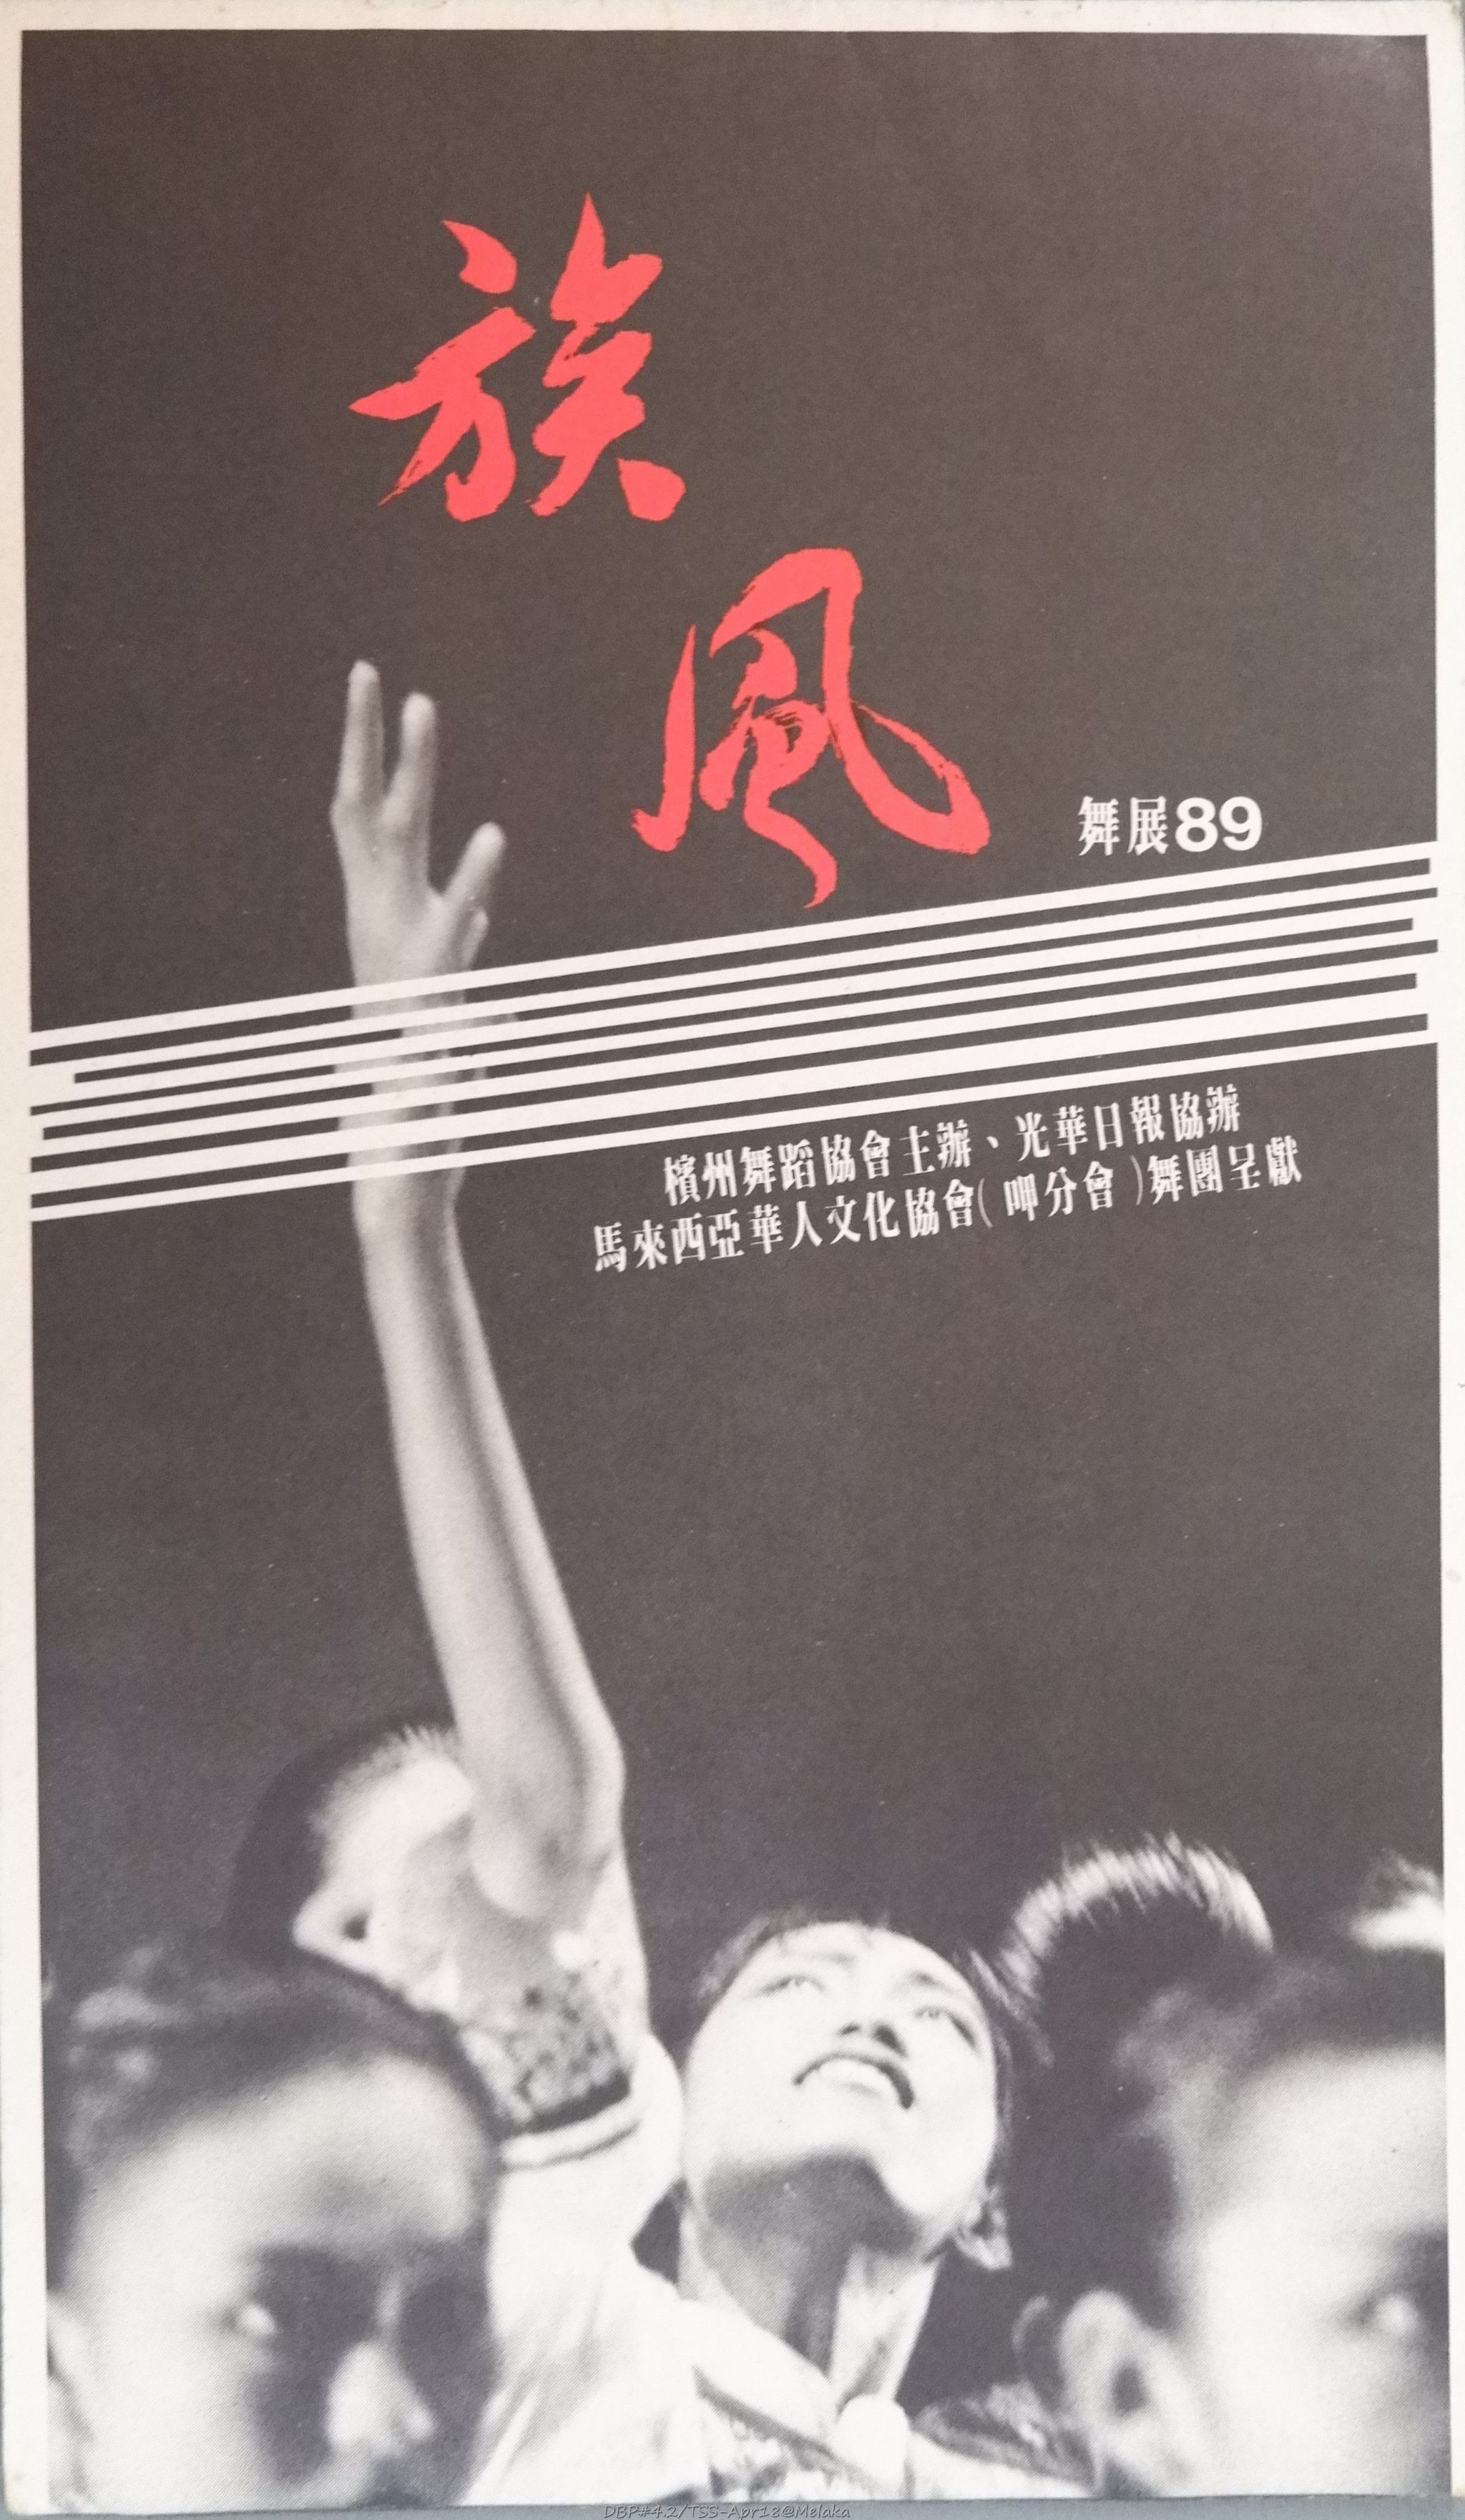 1989 Zu Feng Dance Show cover